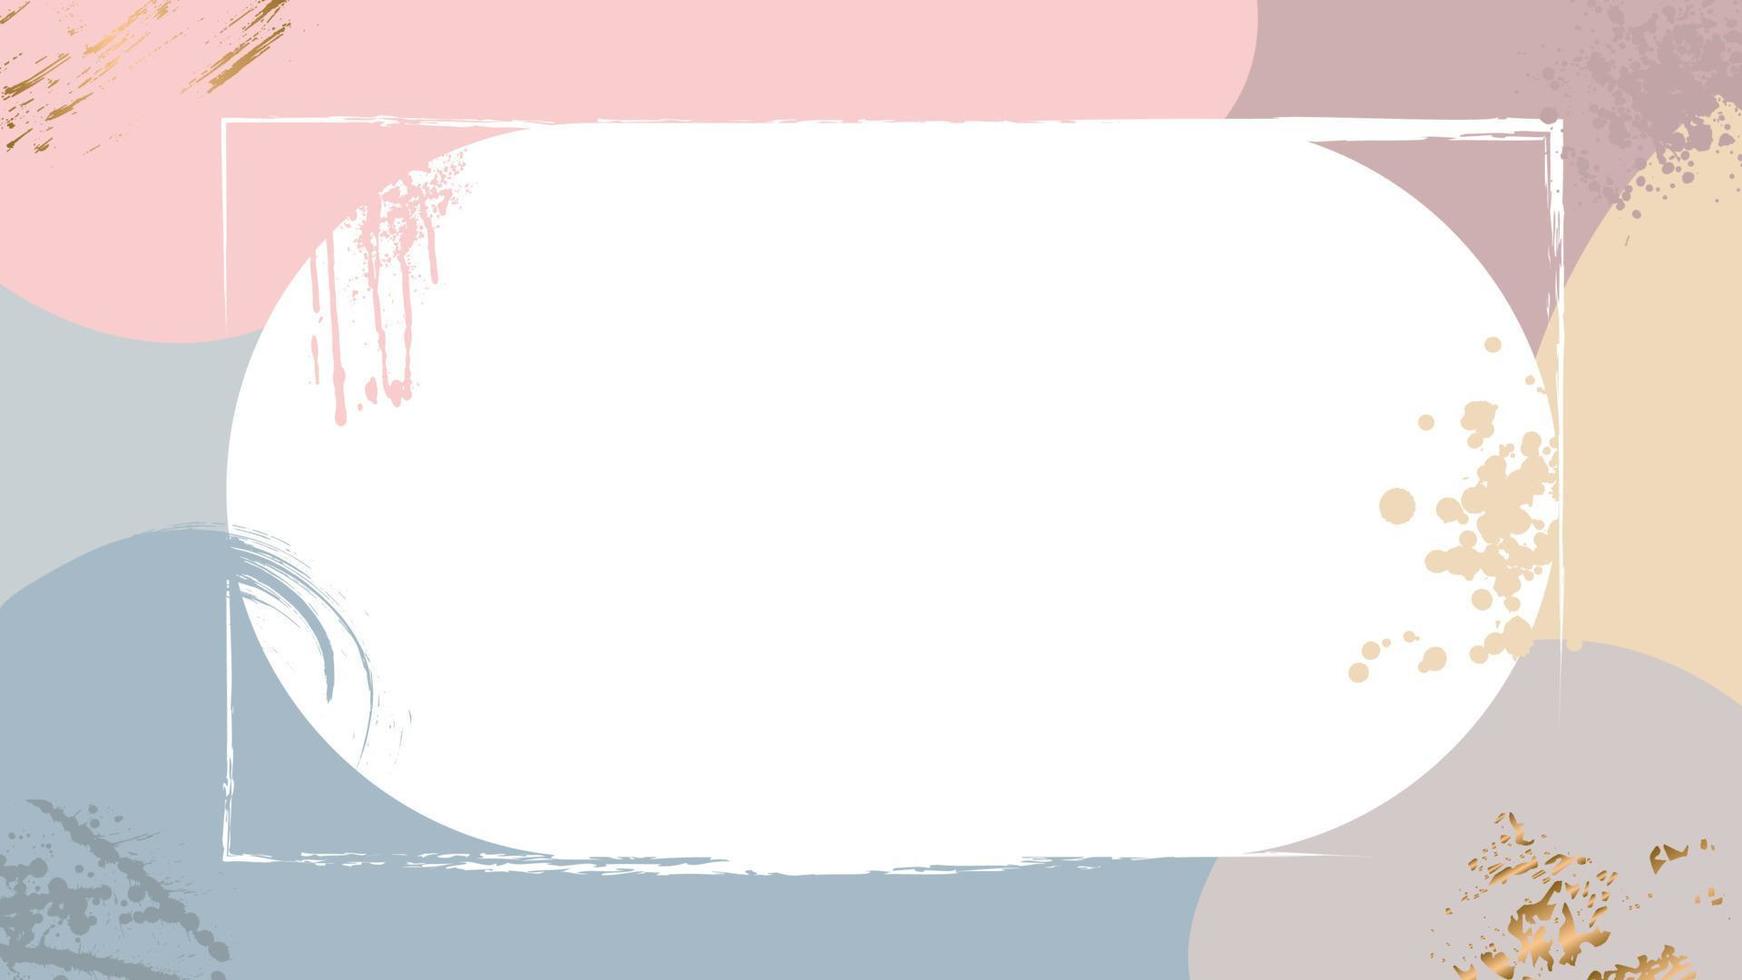 marco de fondo grunge pastel con lugar vacío. color marrón claro con hoja, trazos dorados ilustración vectorial. vector